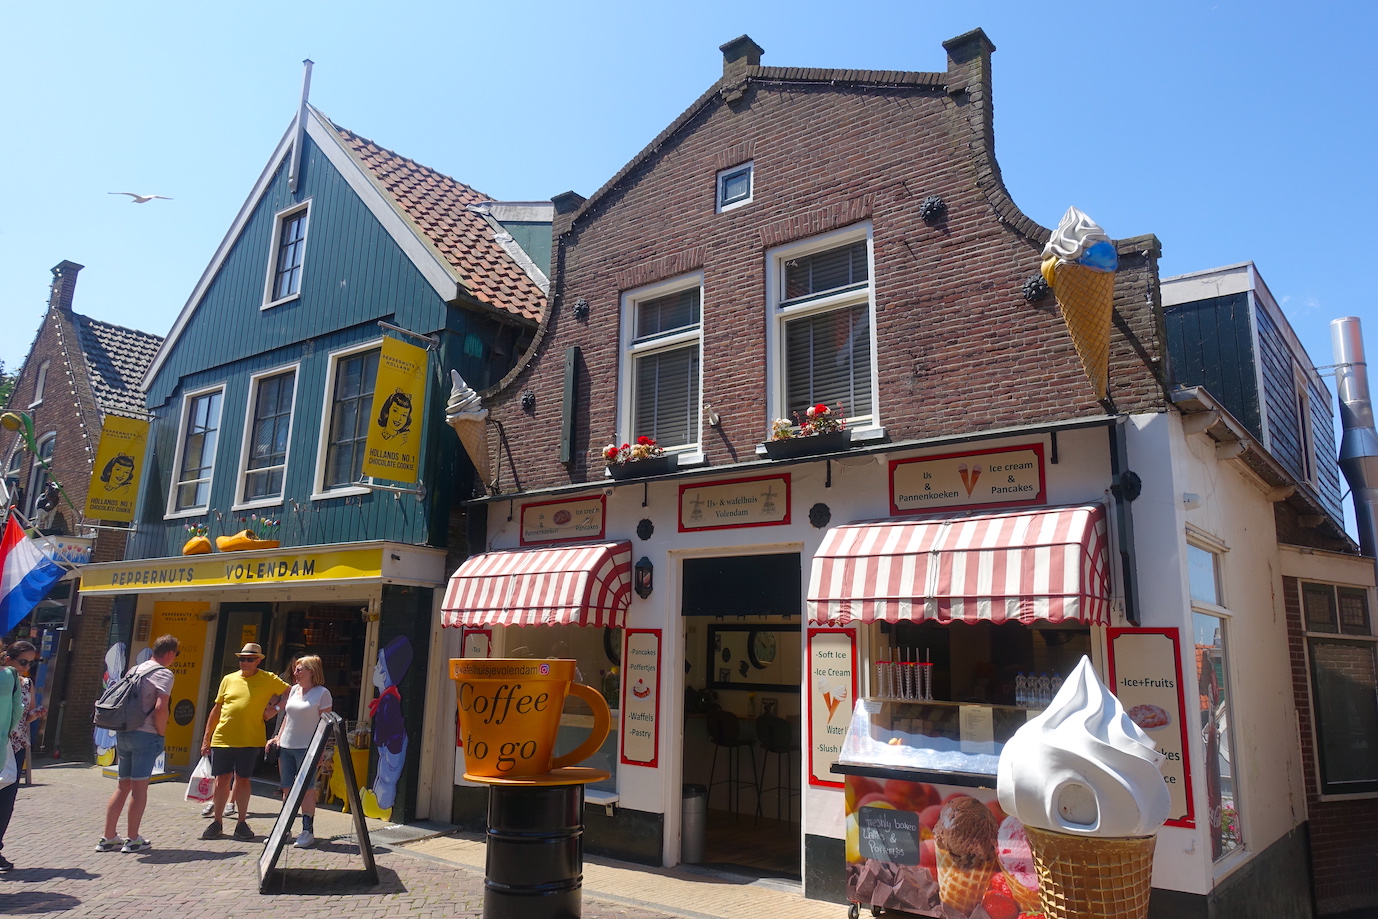 Ice cream and coffe shop in Volendam